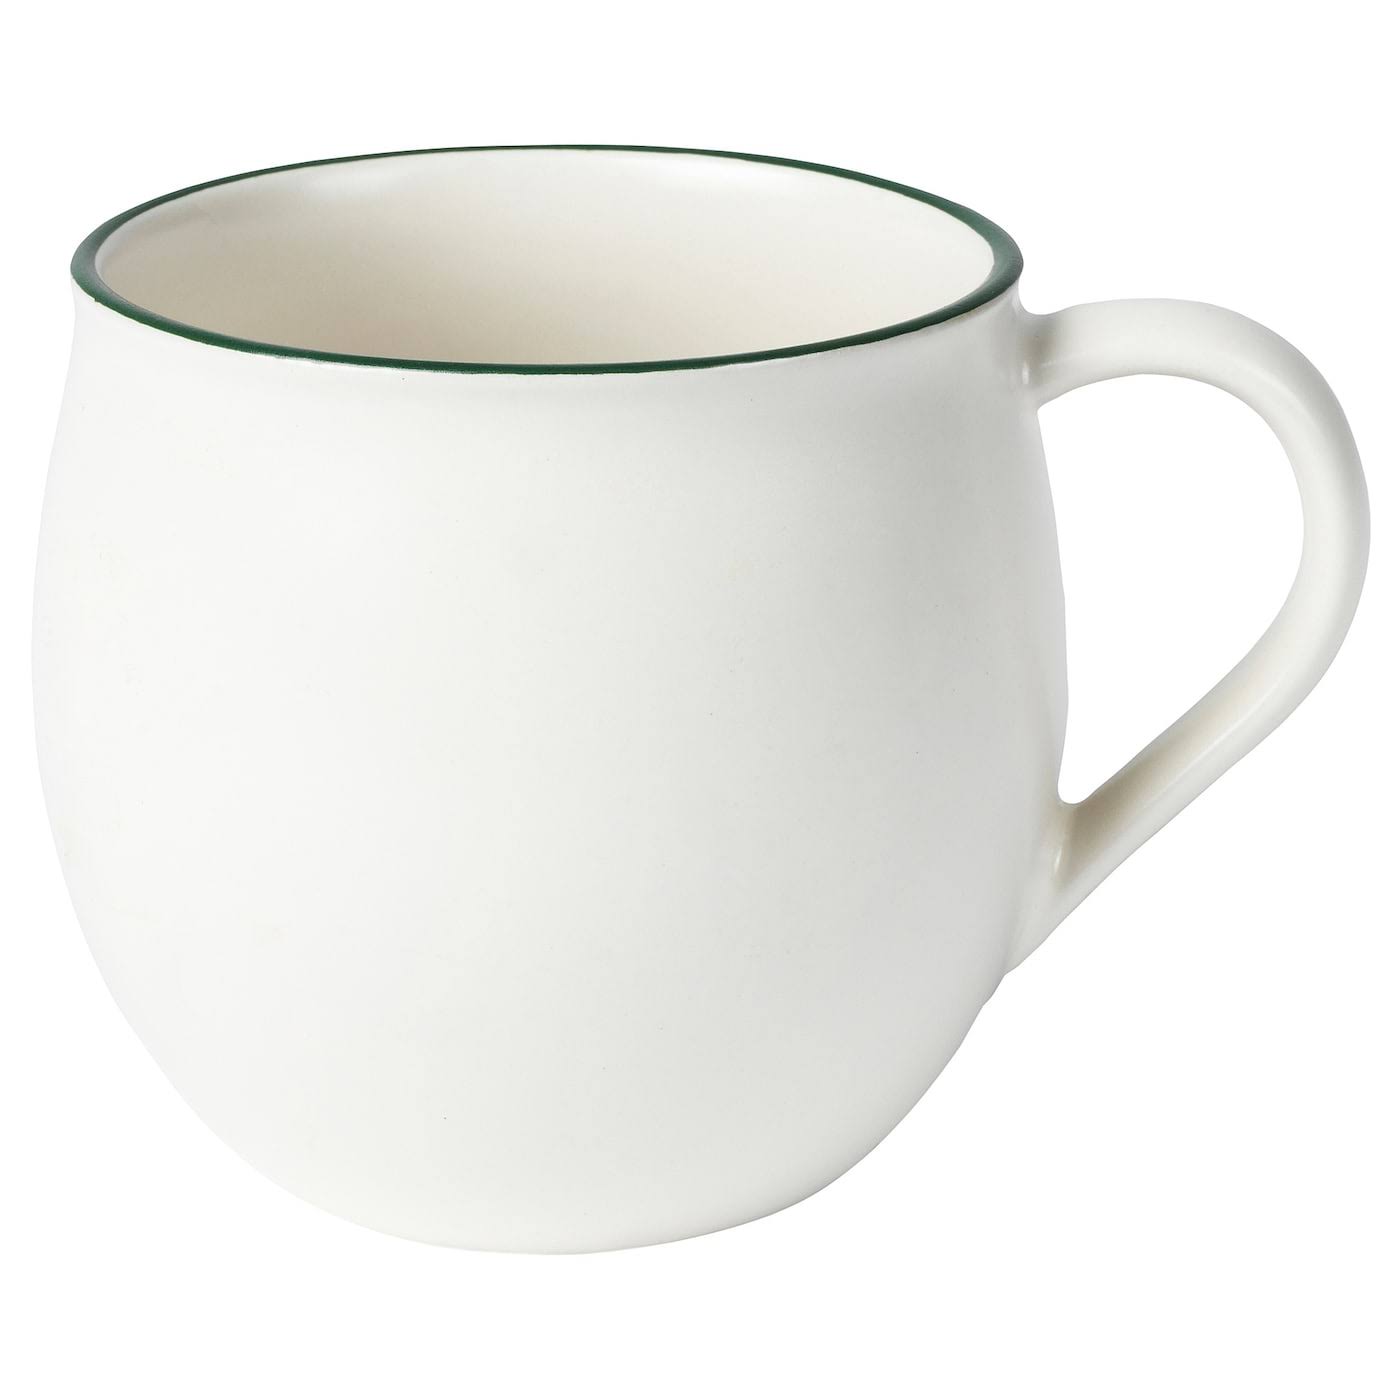 Hot Cocoa/Soup Mug